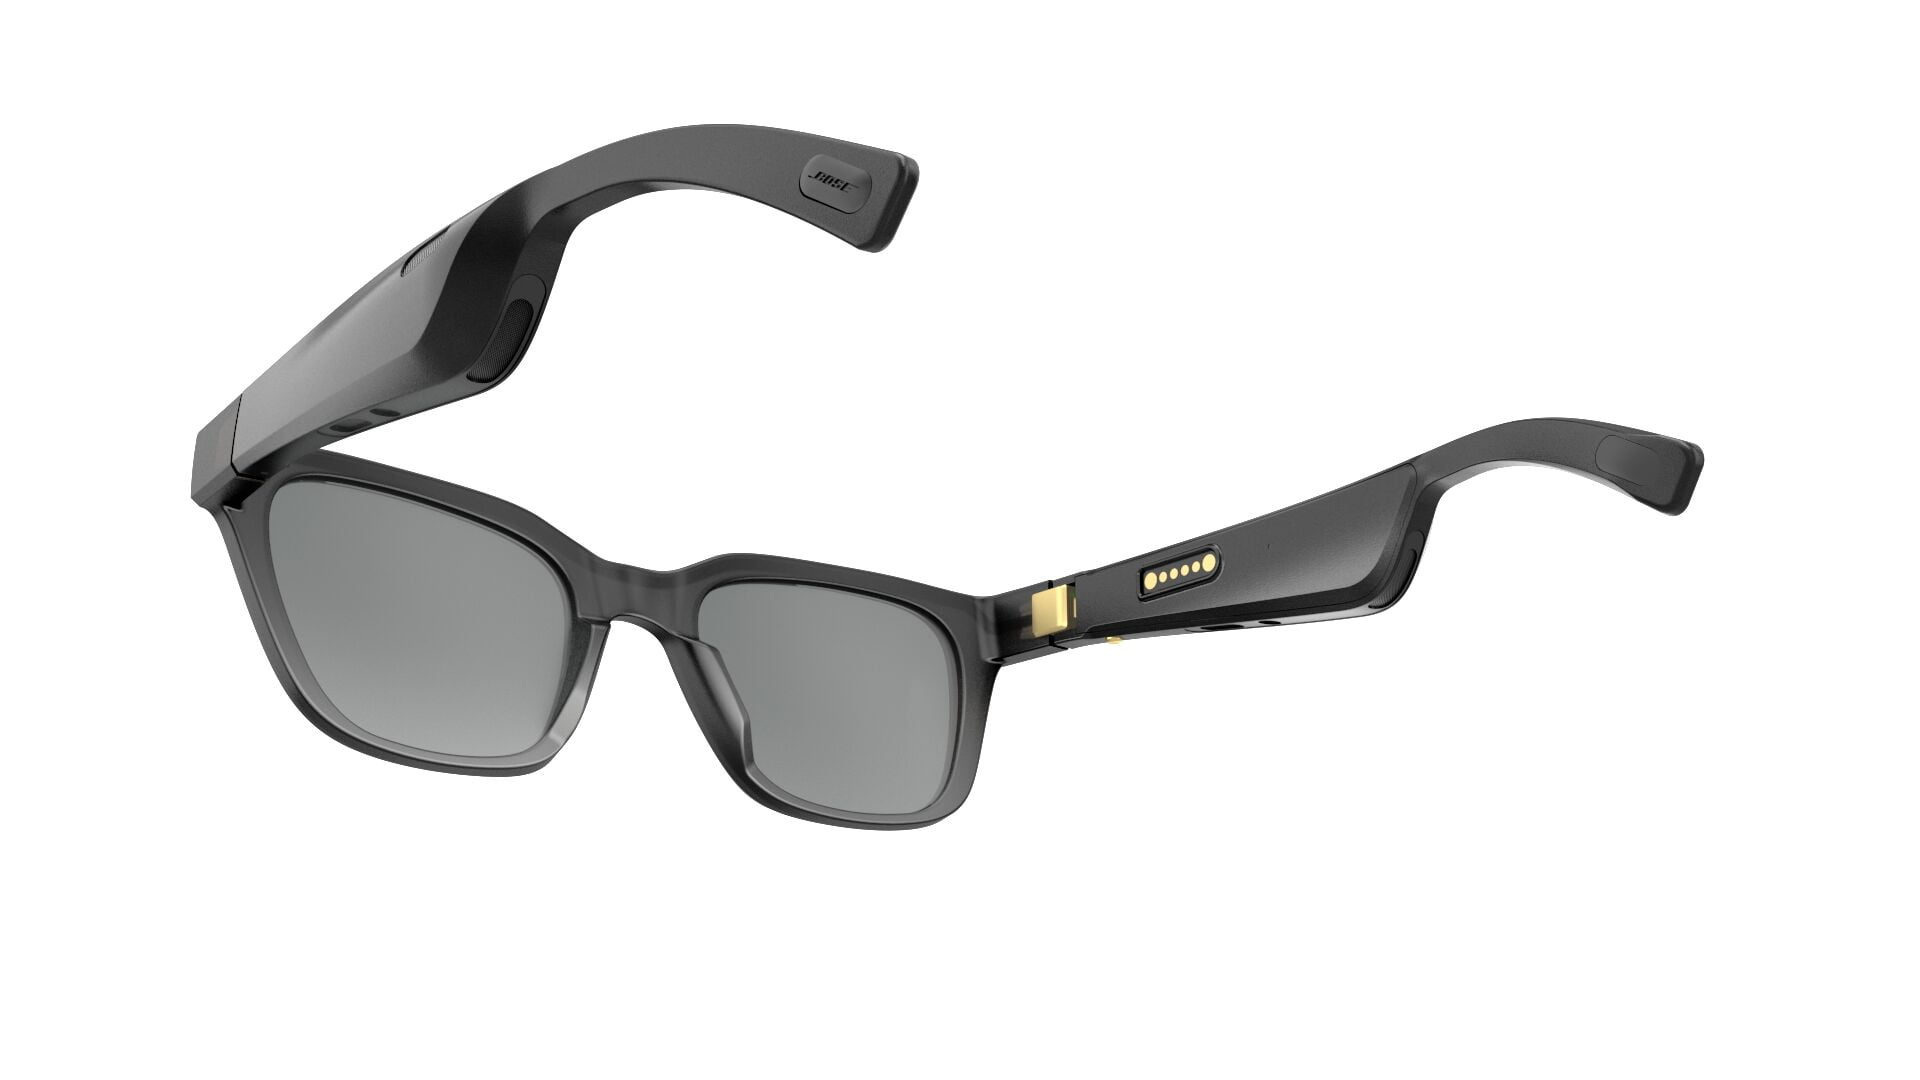 Bose Frames Alto Bluetooth Audio Sunglasses